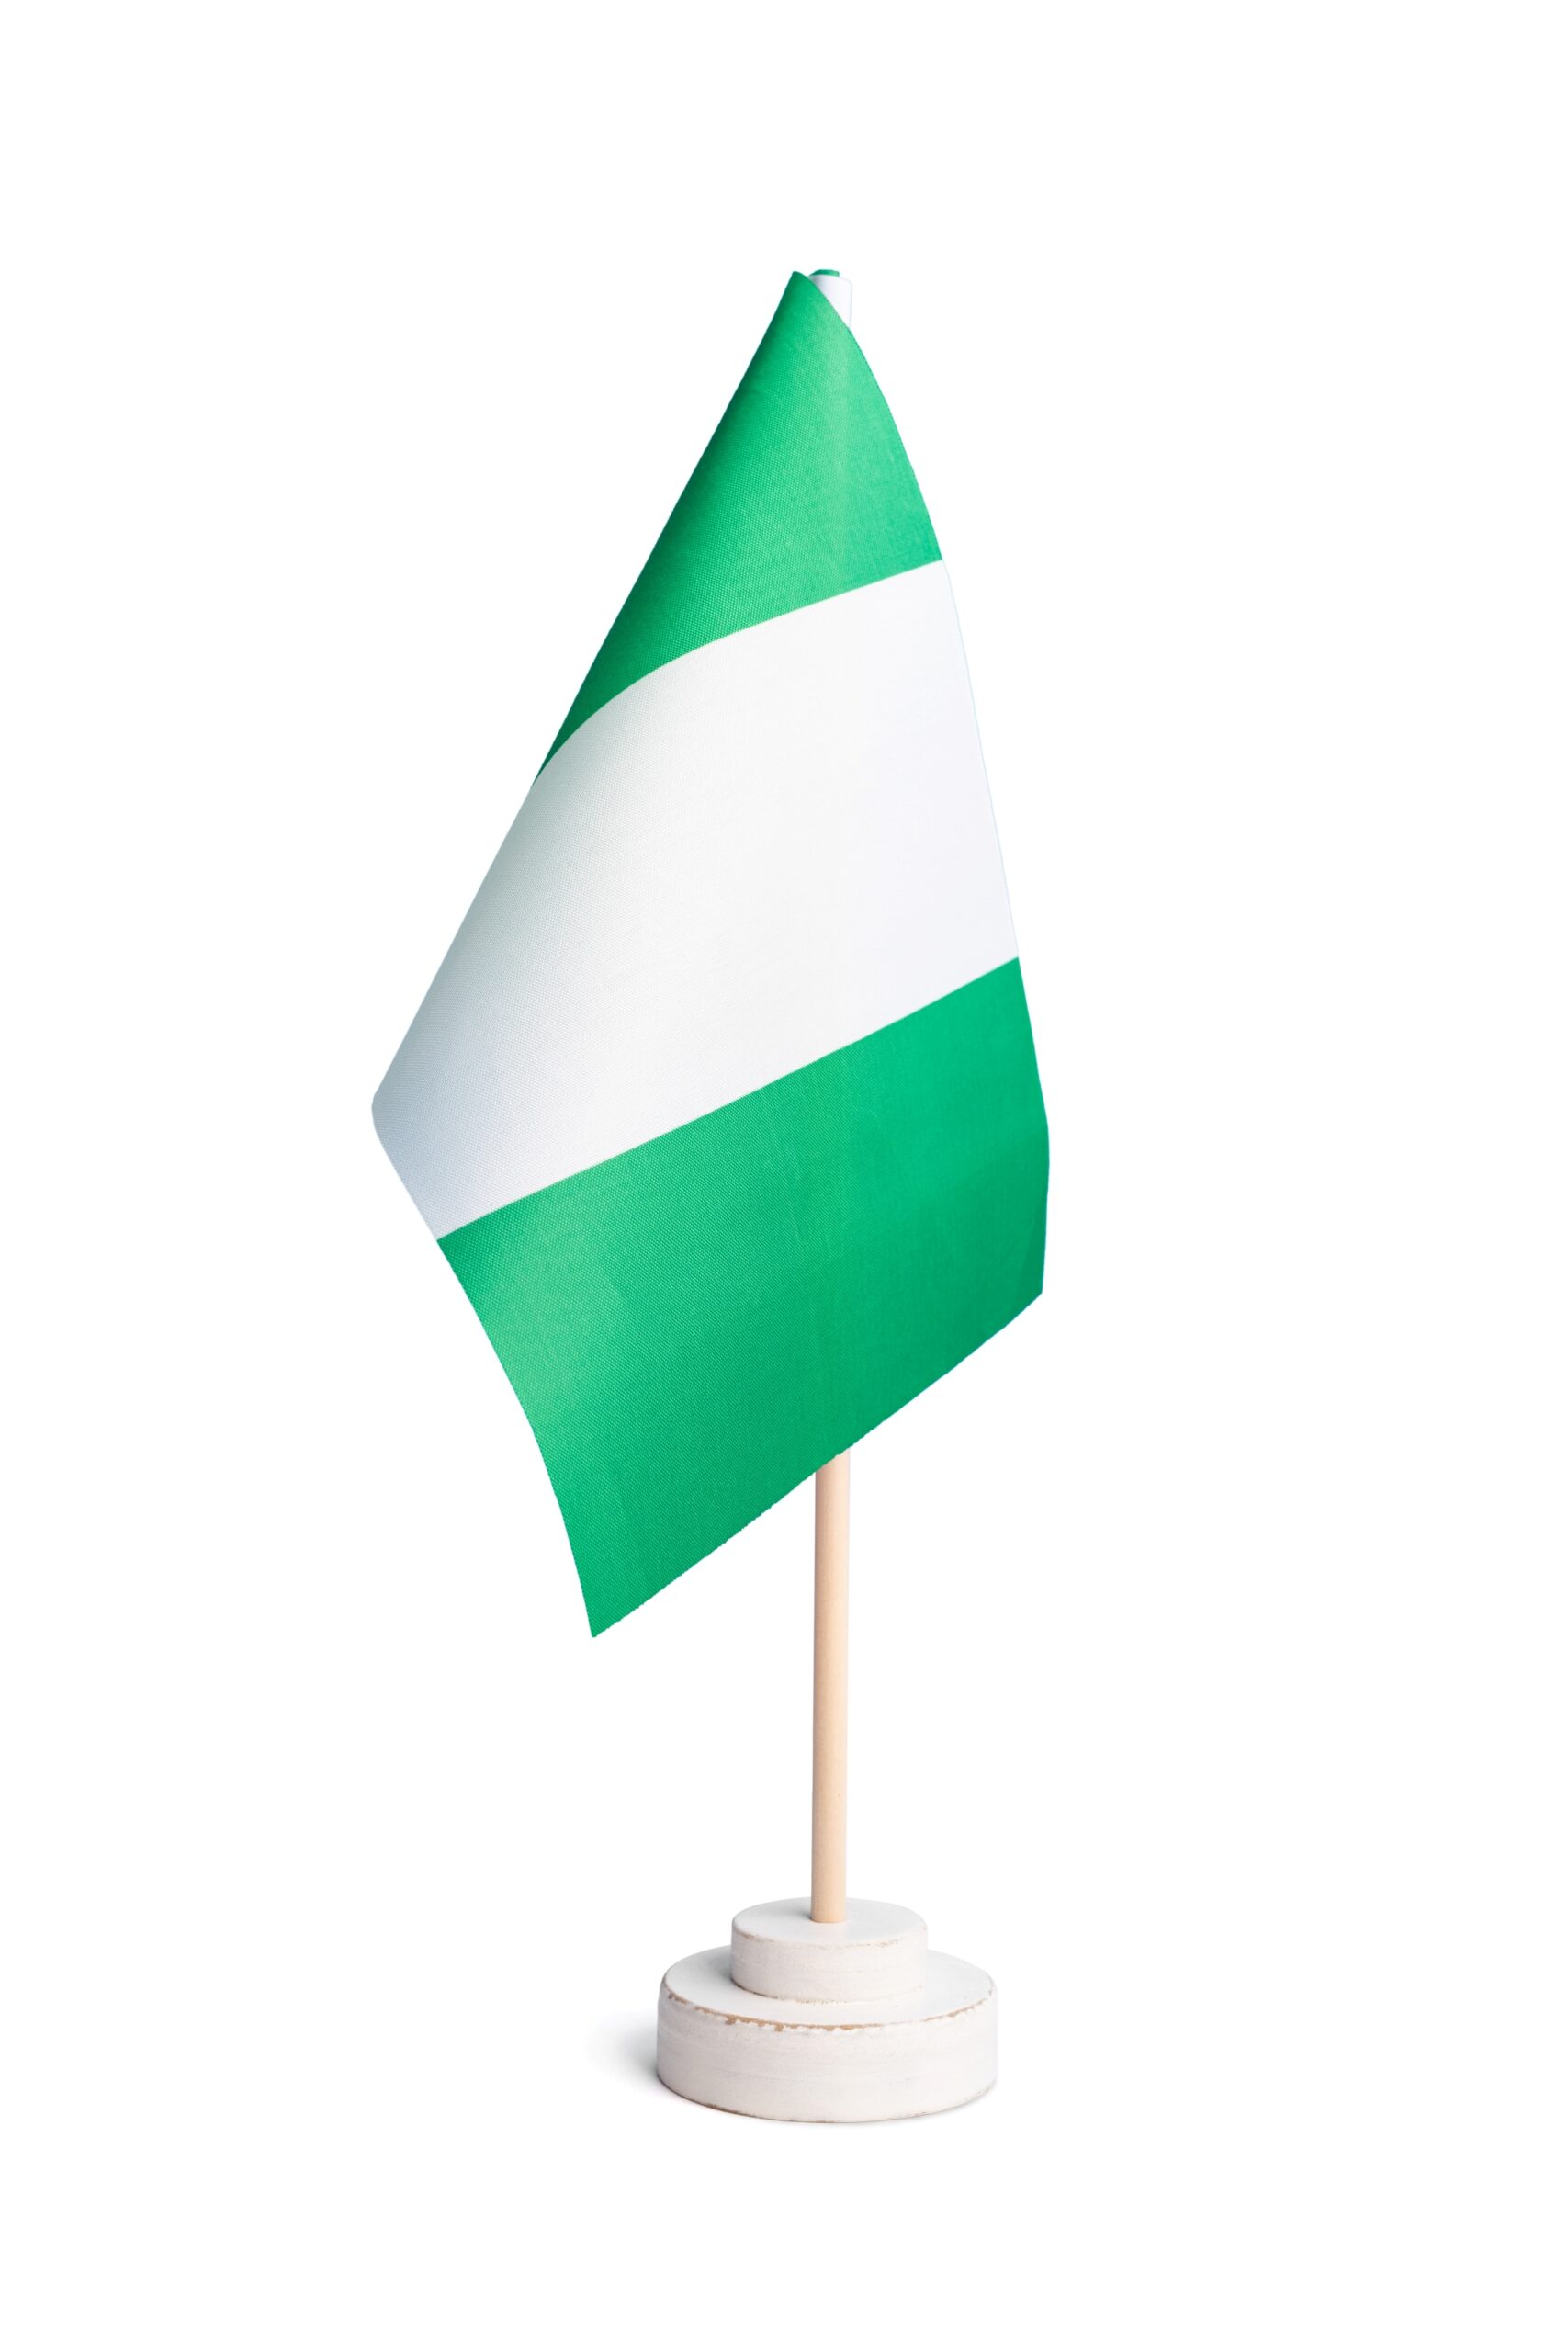 table-flag-of-nigeria-isolated-on-white-background-2023-11-27-05-07-39-utc(c)